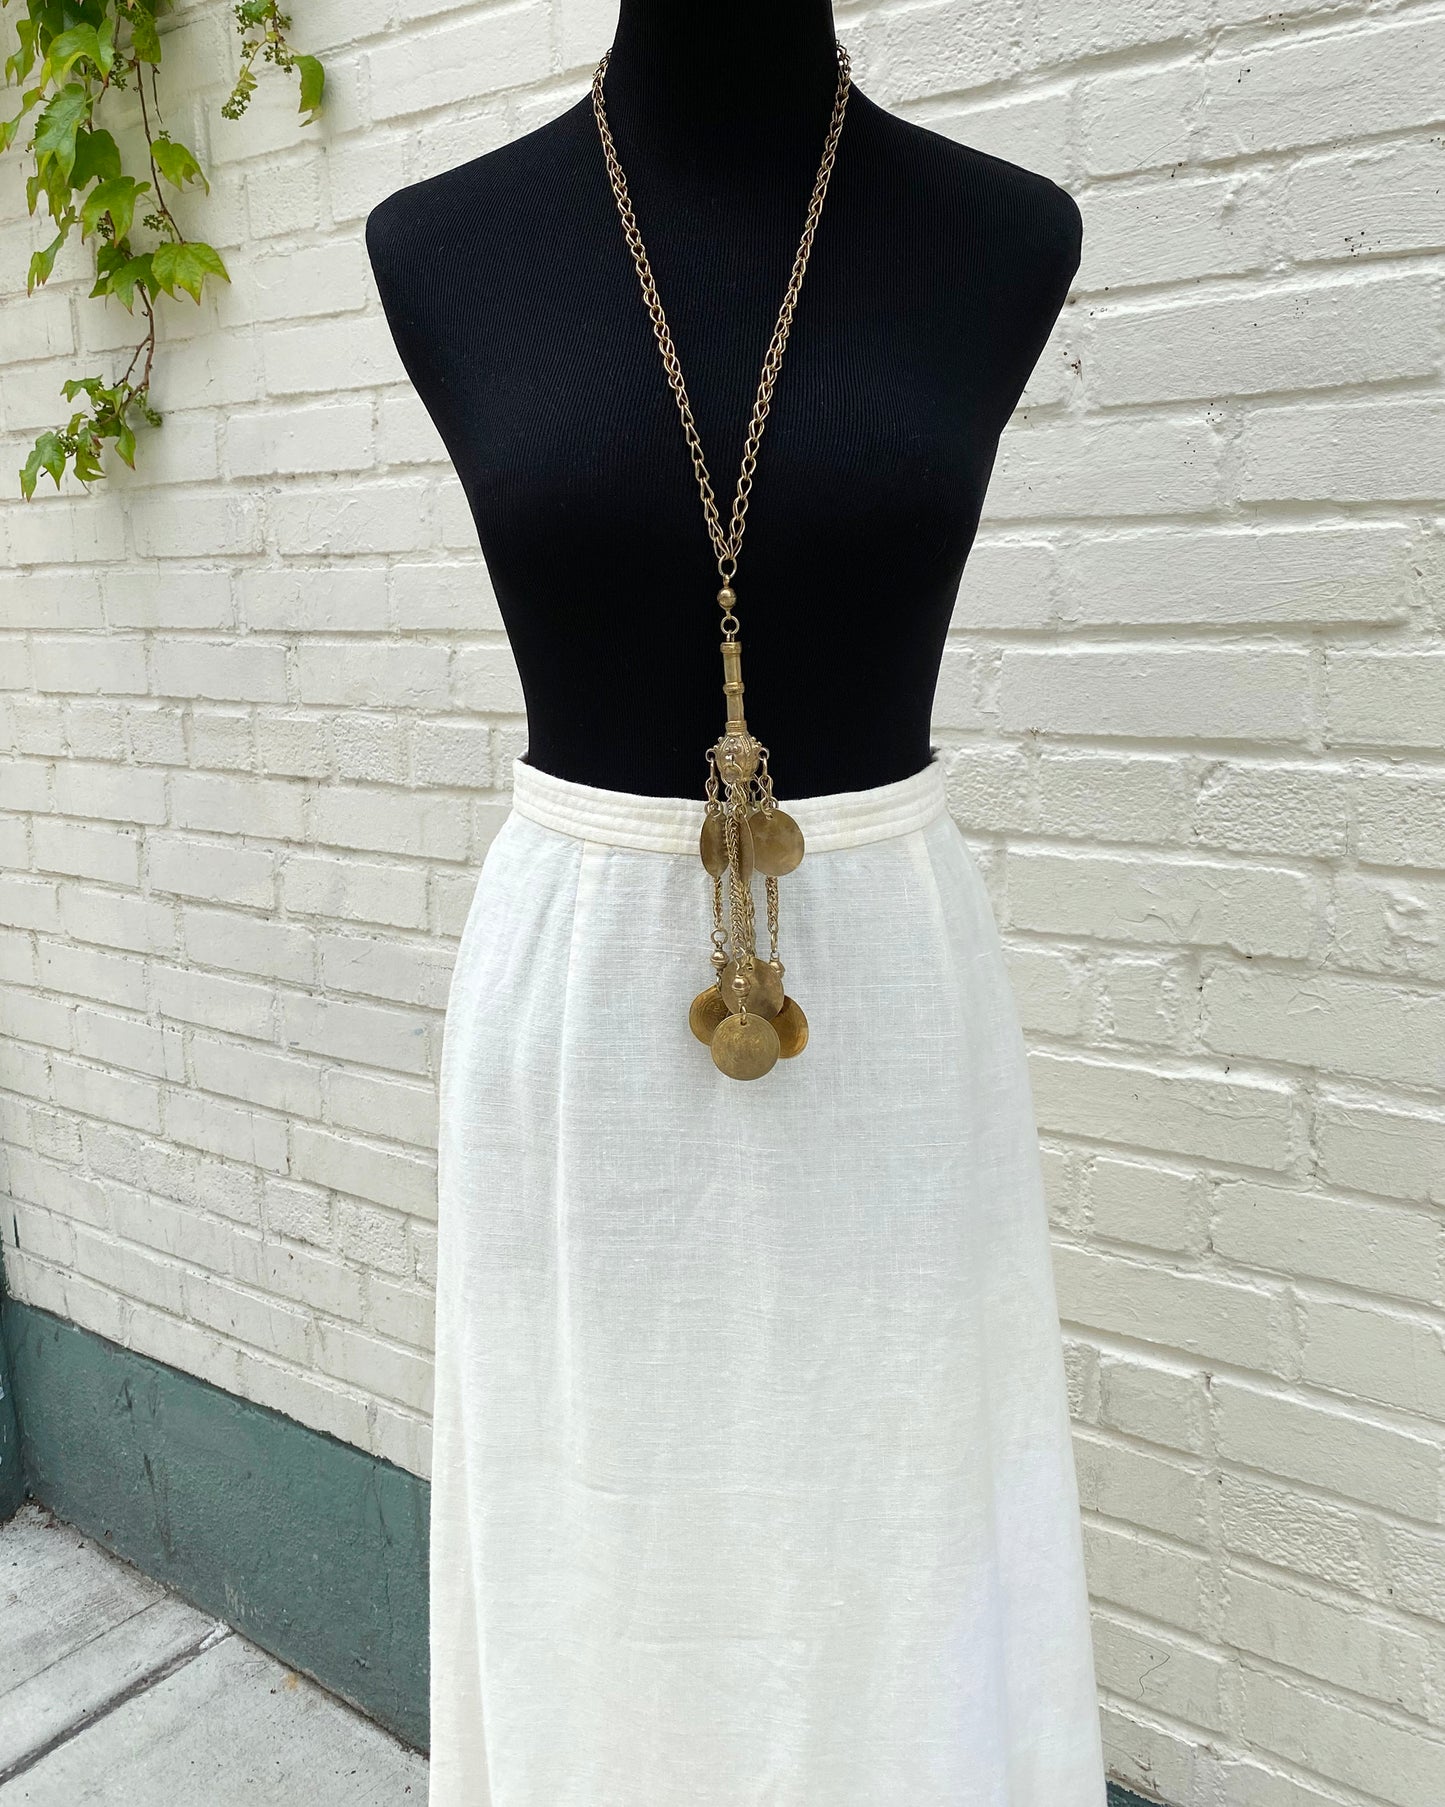 White Linen Maxi Skirt